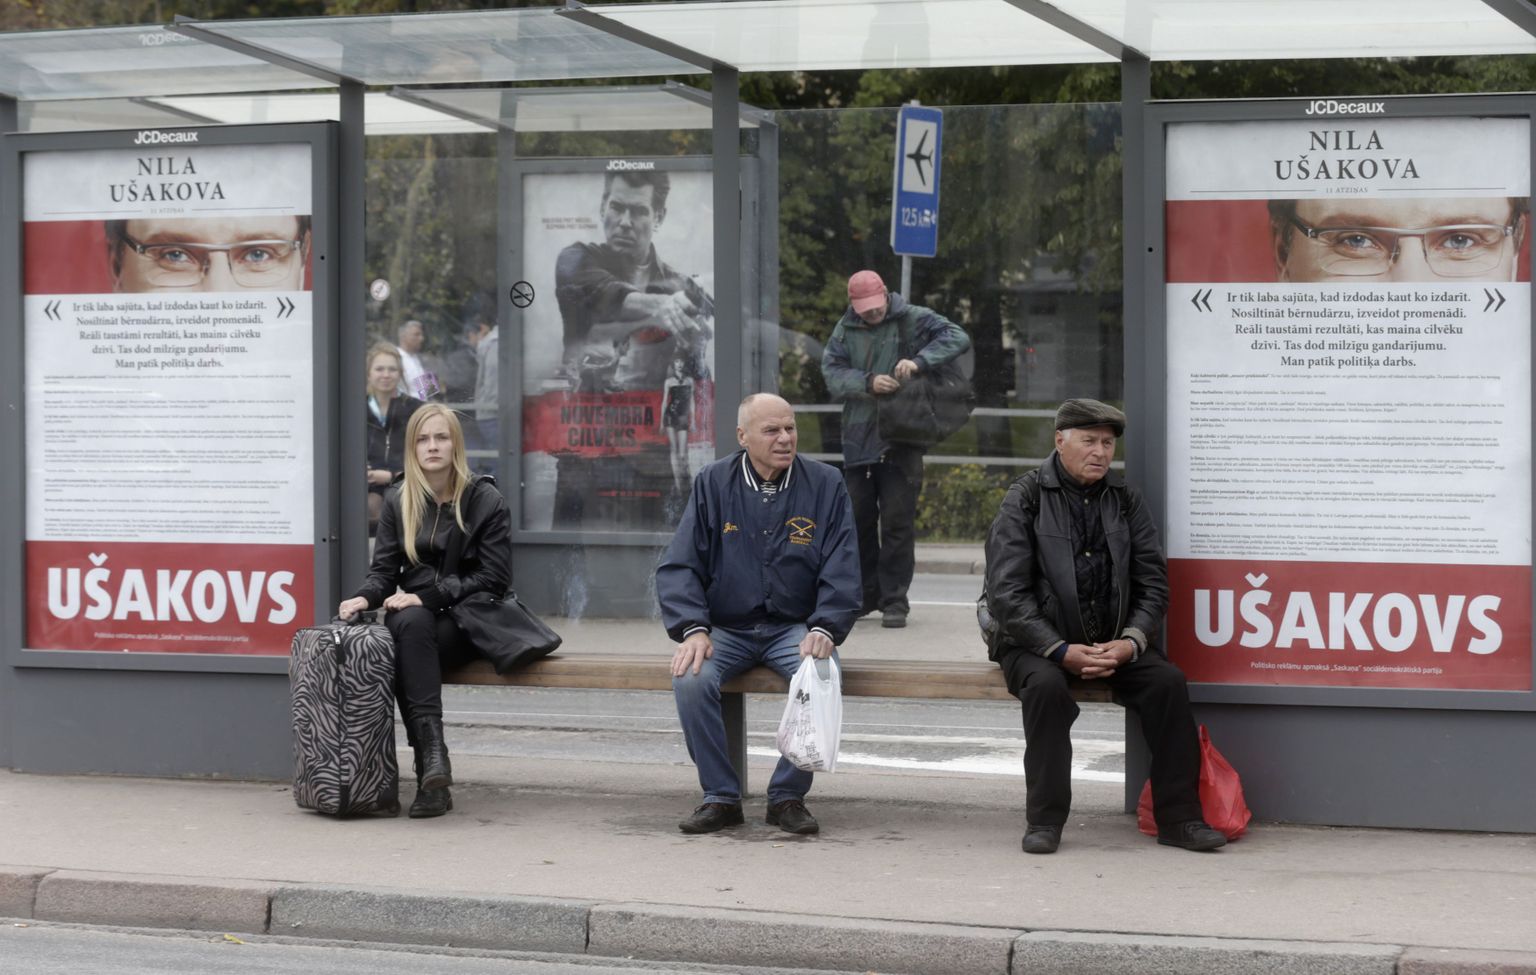 Nils Ušakovsi valimisreklaam Riia bussipeatuses.